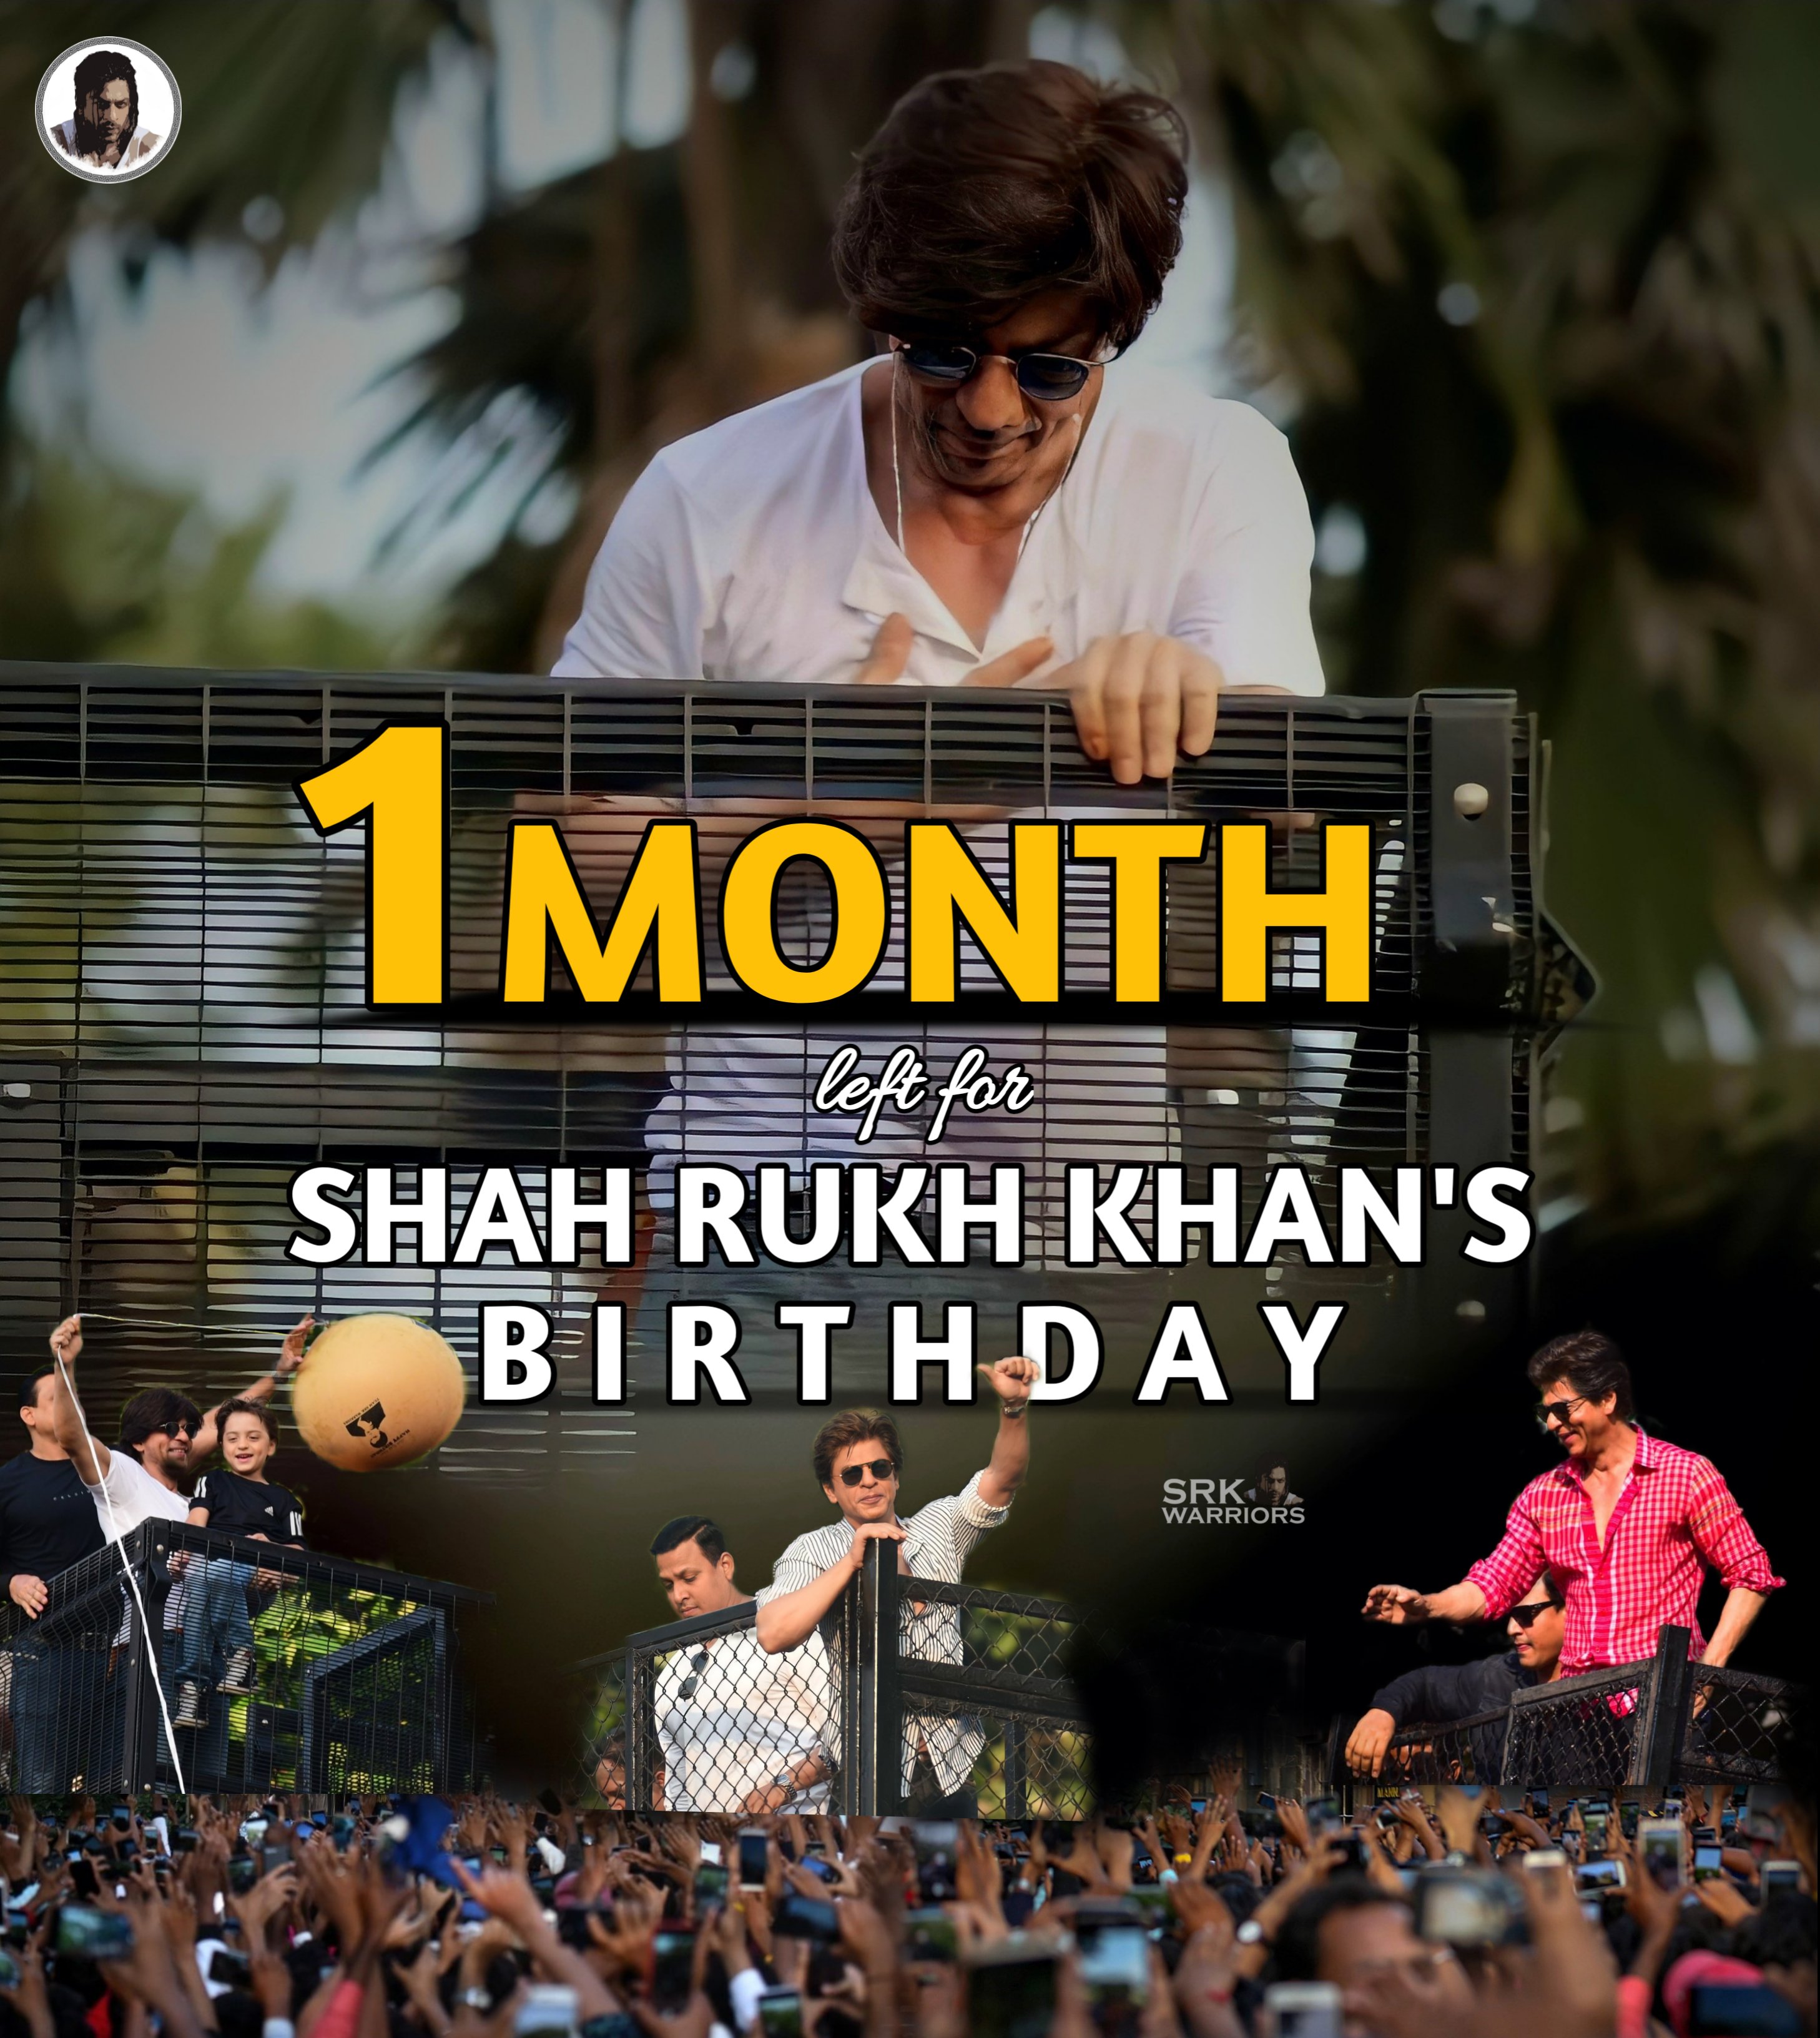 Shah Rukh Khan Warriors FAN Club on X: Just #8DaysForPathaan &